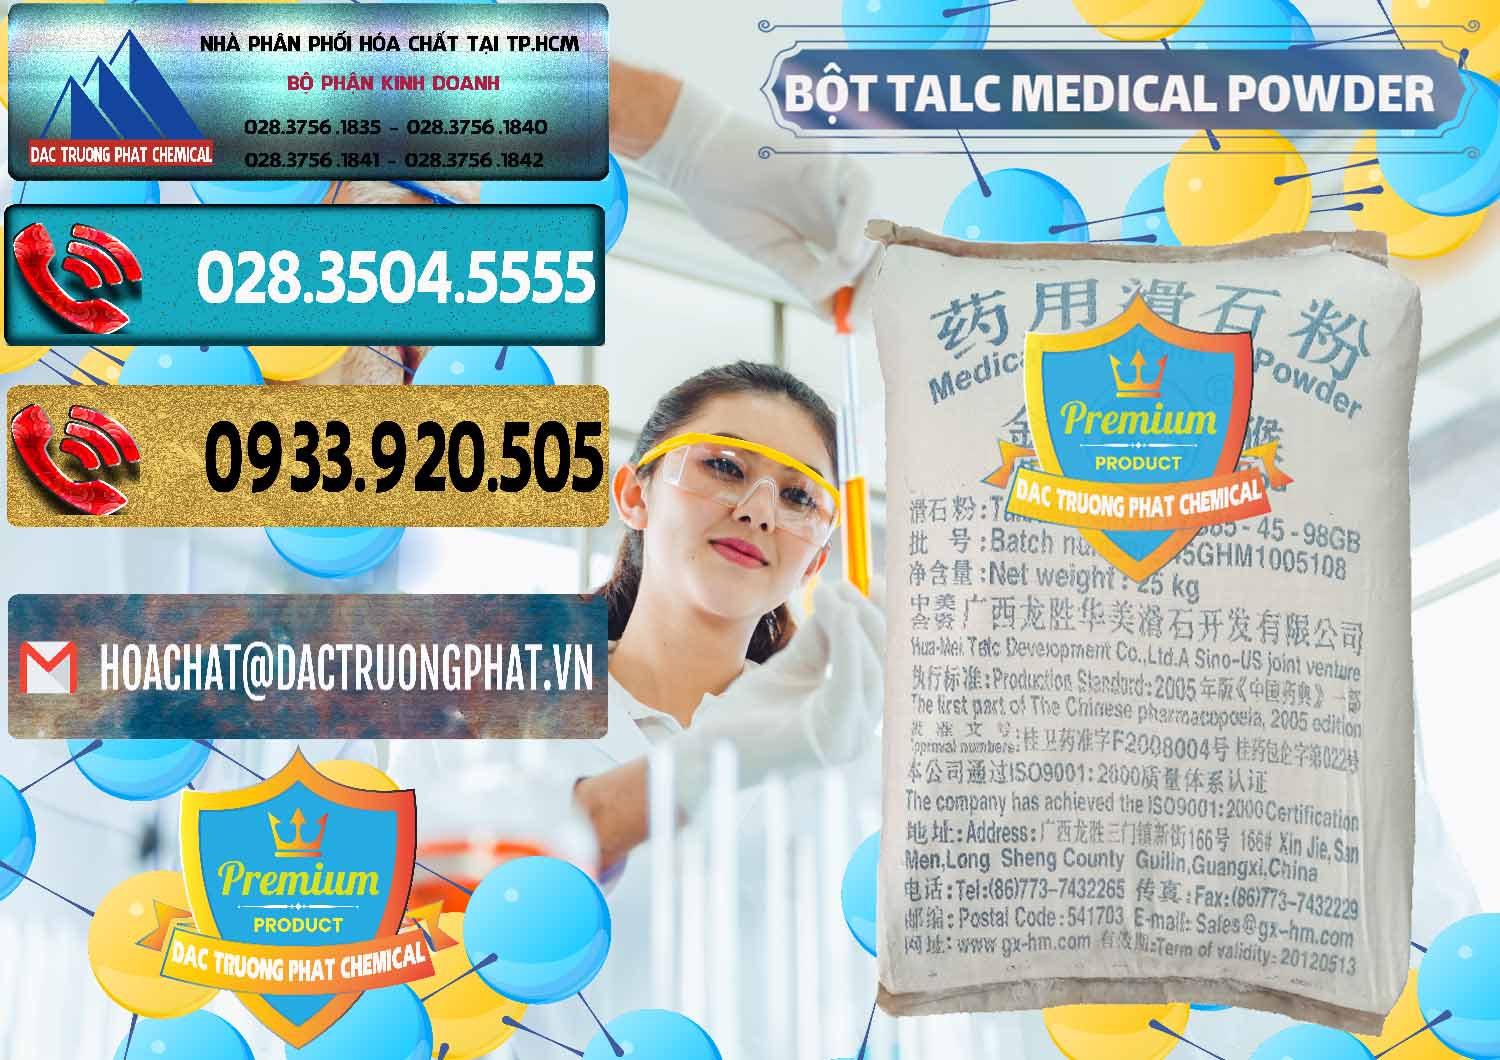 Nơi chuyên phân phối - bán Bột Talc Medical Powder Trung Quốc China - 0036 - Phân phối & bán hóa chất tại TP.HCM - hoachatdetnhuom.com